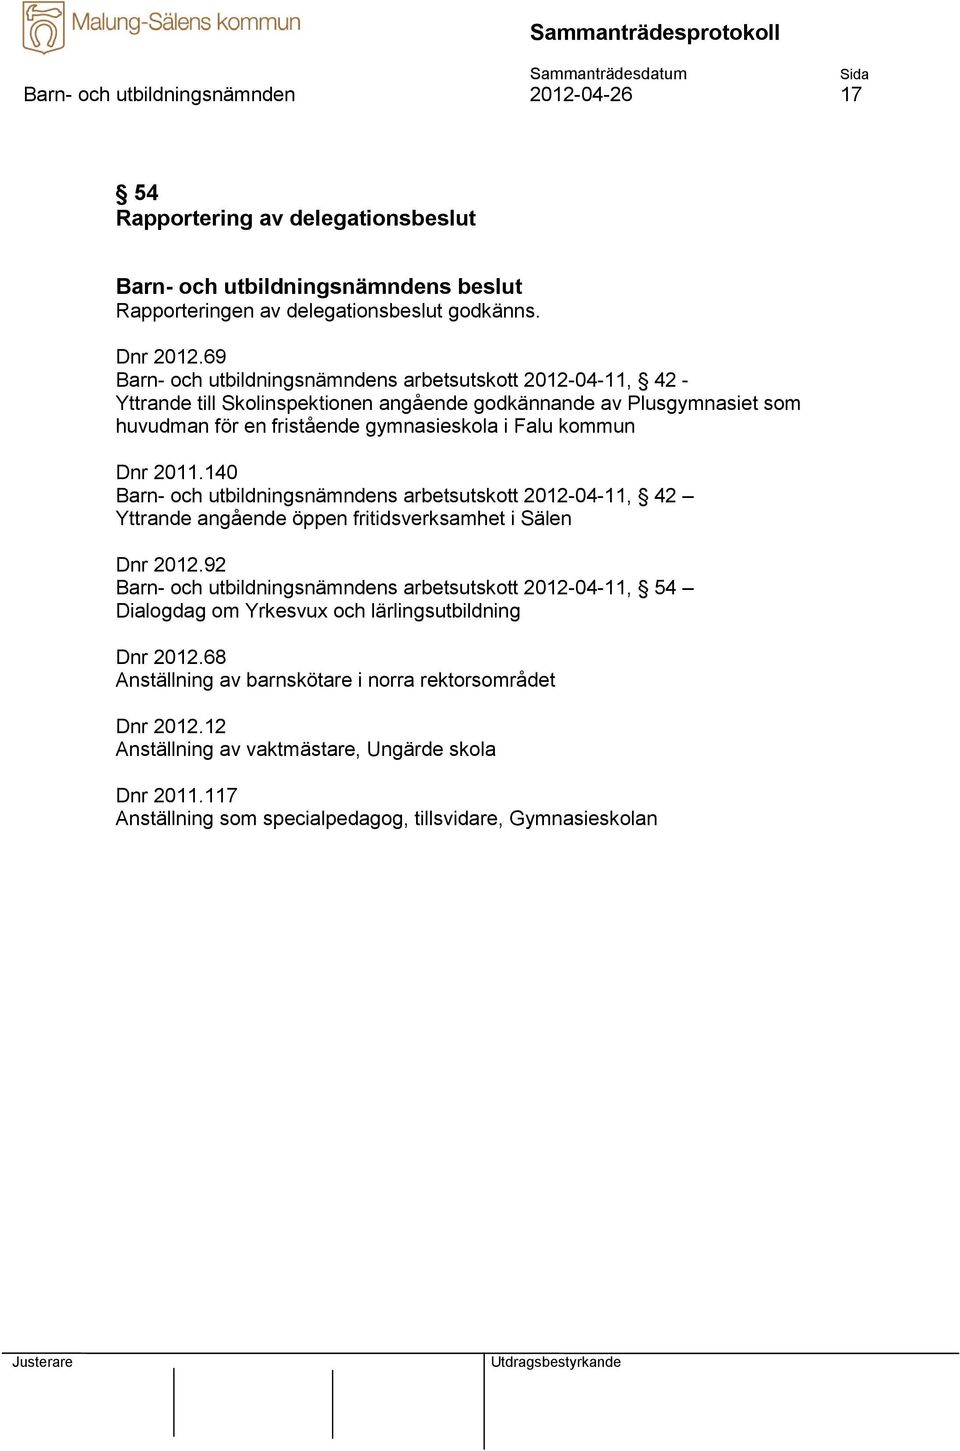 kommun Dnr 2011.140 Barn- och utbildningsnämndens arbetsutskott 2012-04-11, 42 Yttrande angående öppen fritidsverksamhet i Sälen Dnr 2012.